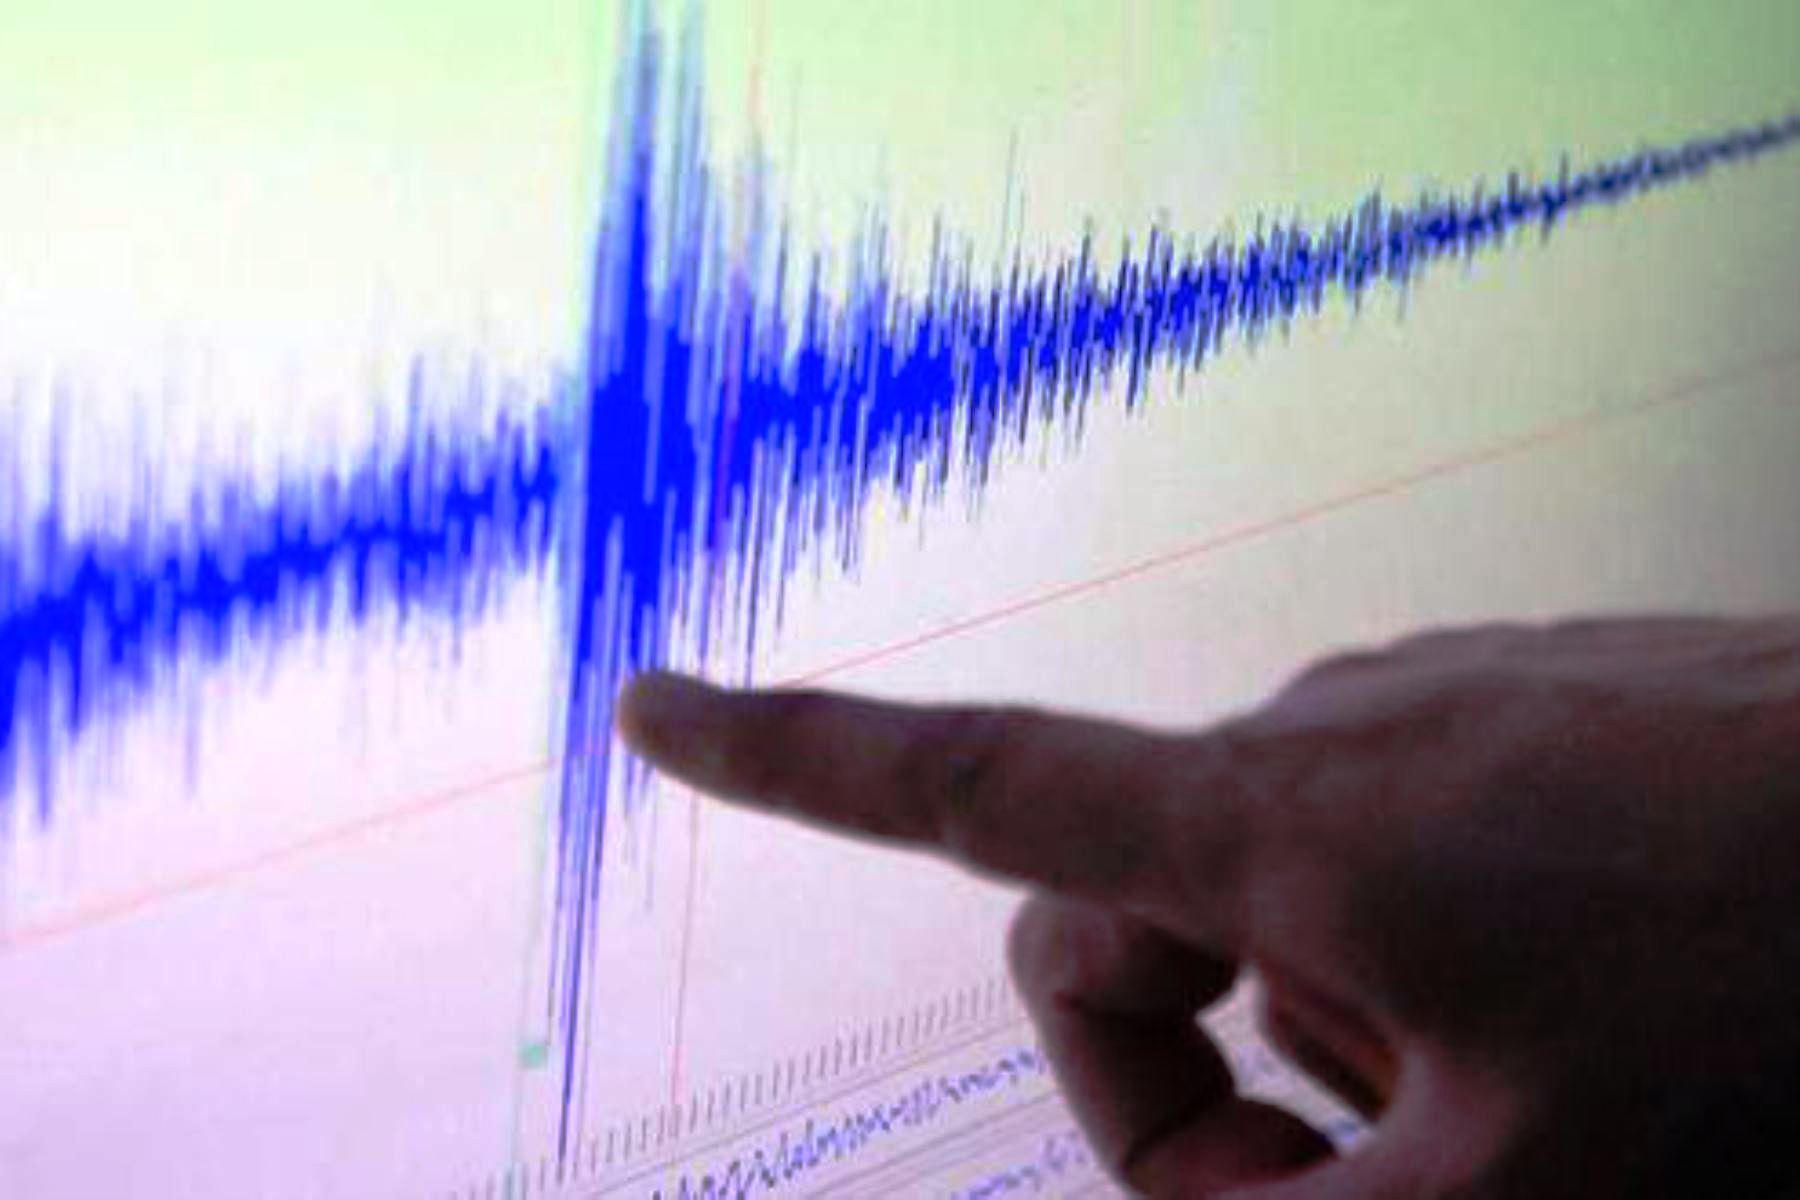 Portada: Sismo de magnitud 3.8 grados se registró este mediodía en Lima